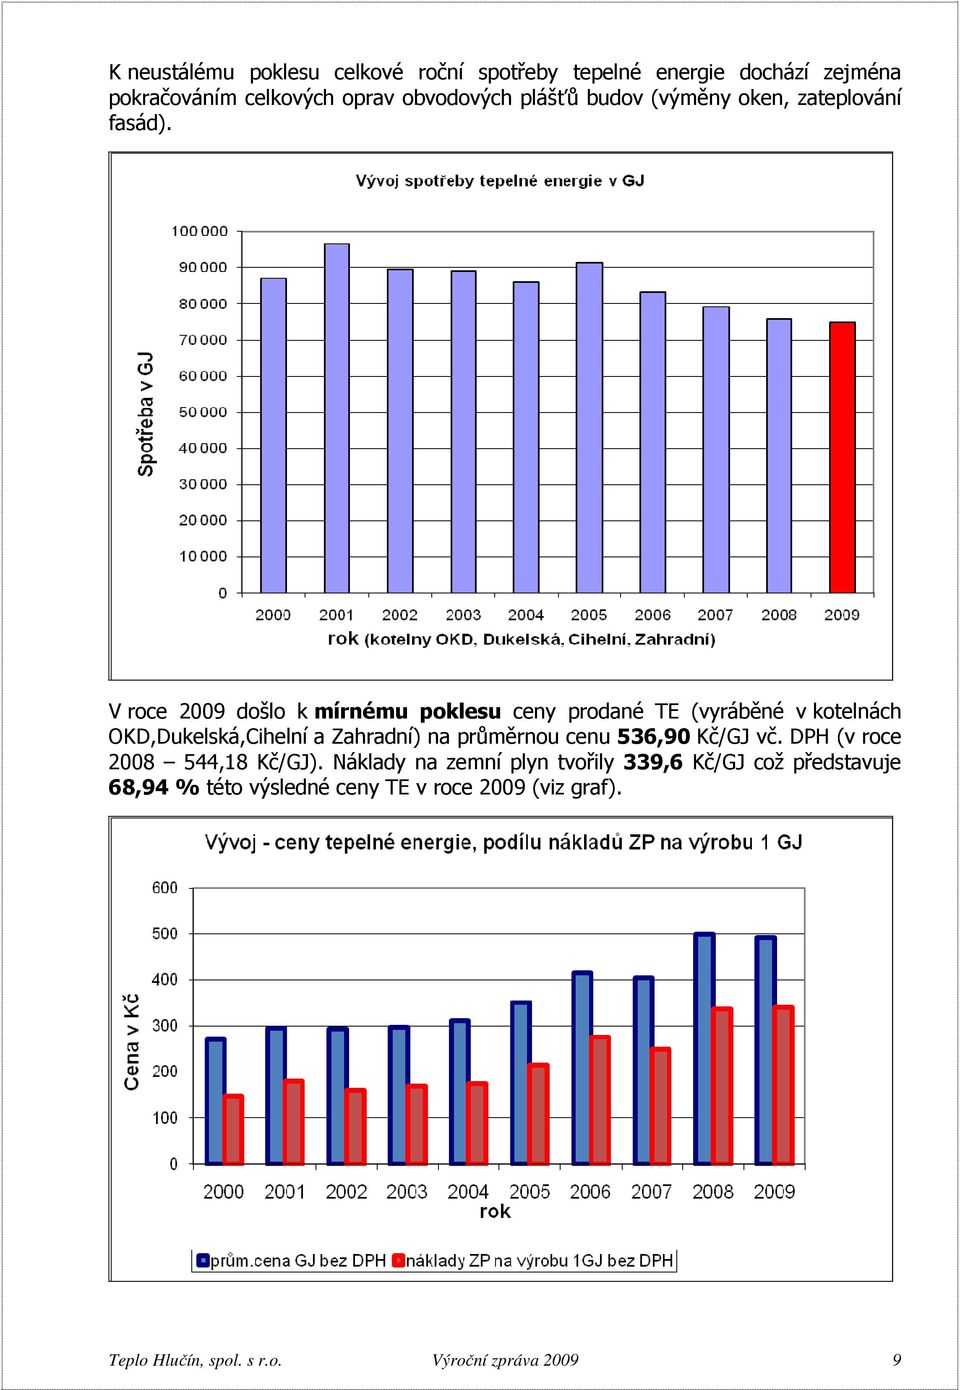 V roce 2009 došlo k mírnému poklesu ceny prodané TE (vyráběné v kotelnách OKD,Dukelská,Cihelní a Zahradní) na průměrnou cenu